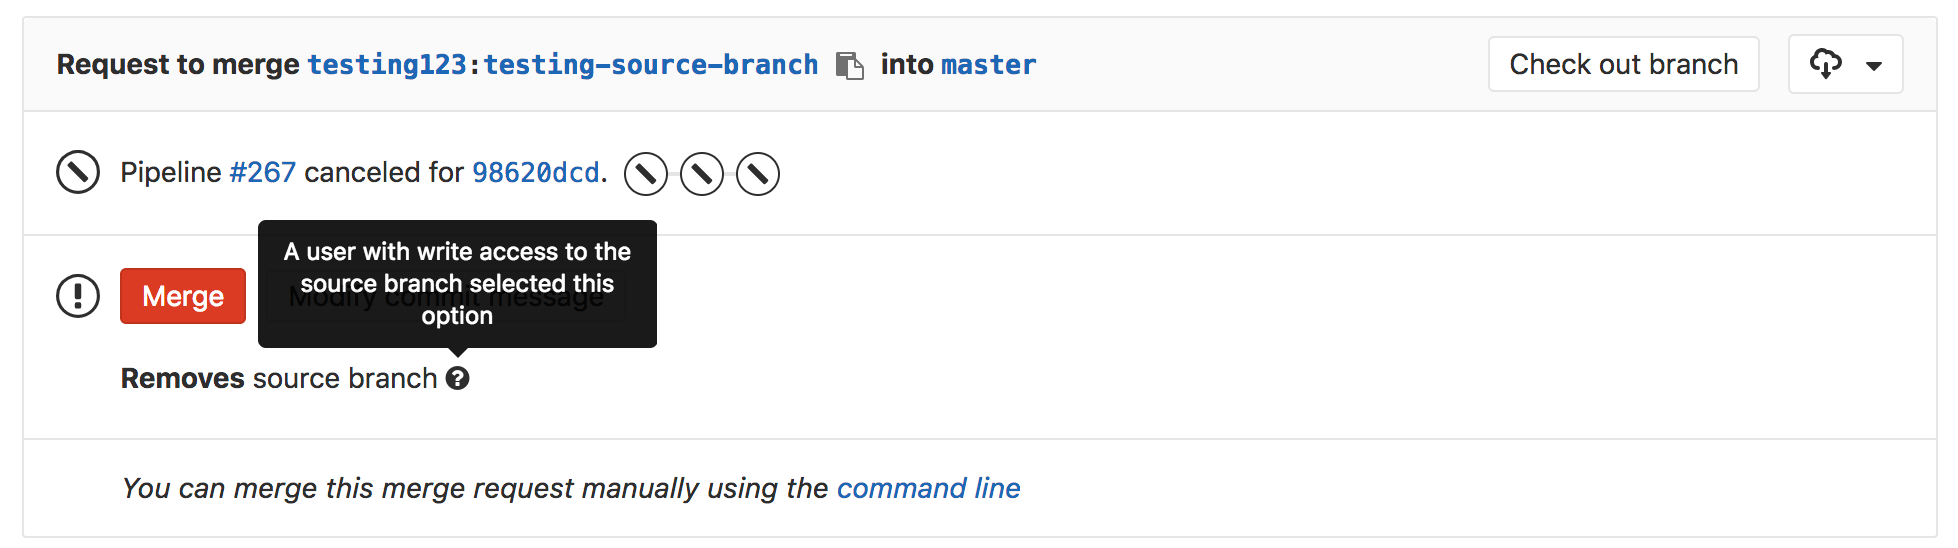 Remove source branch status